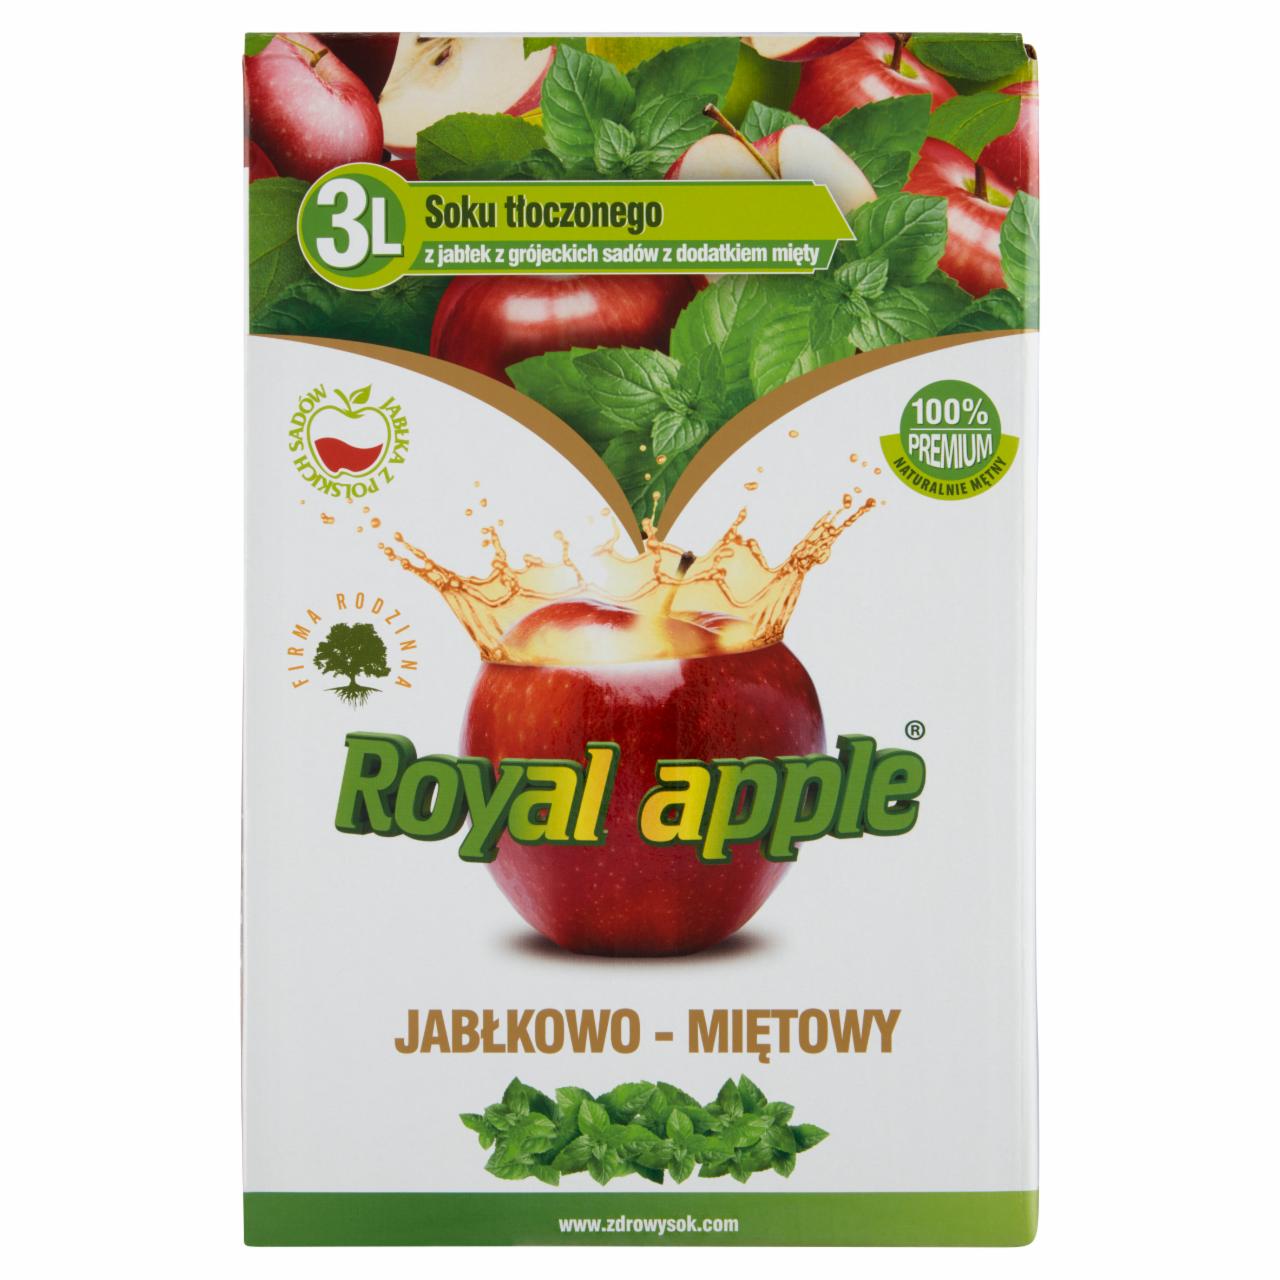 Zdjęcia - Royal apple Napój jabłkowo-miętowy 3 l